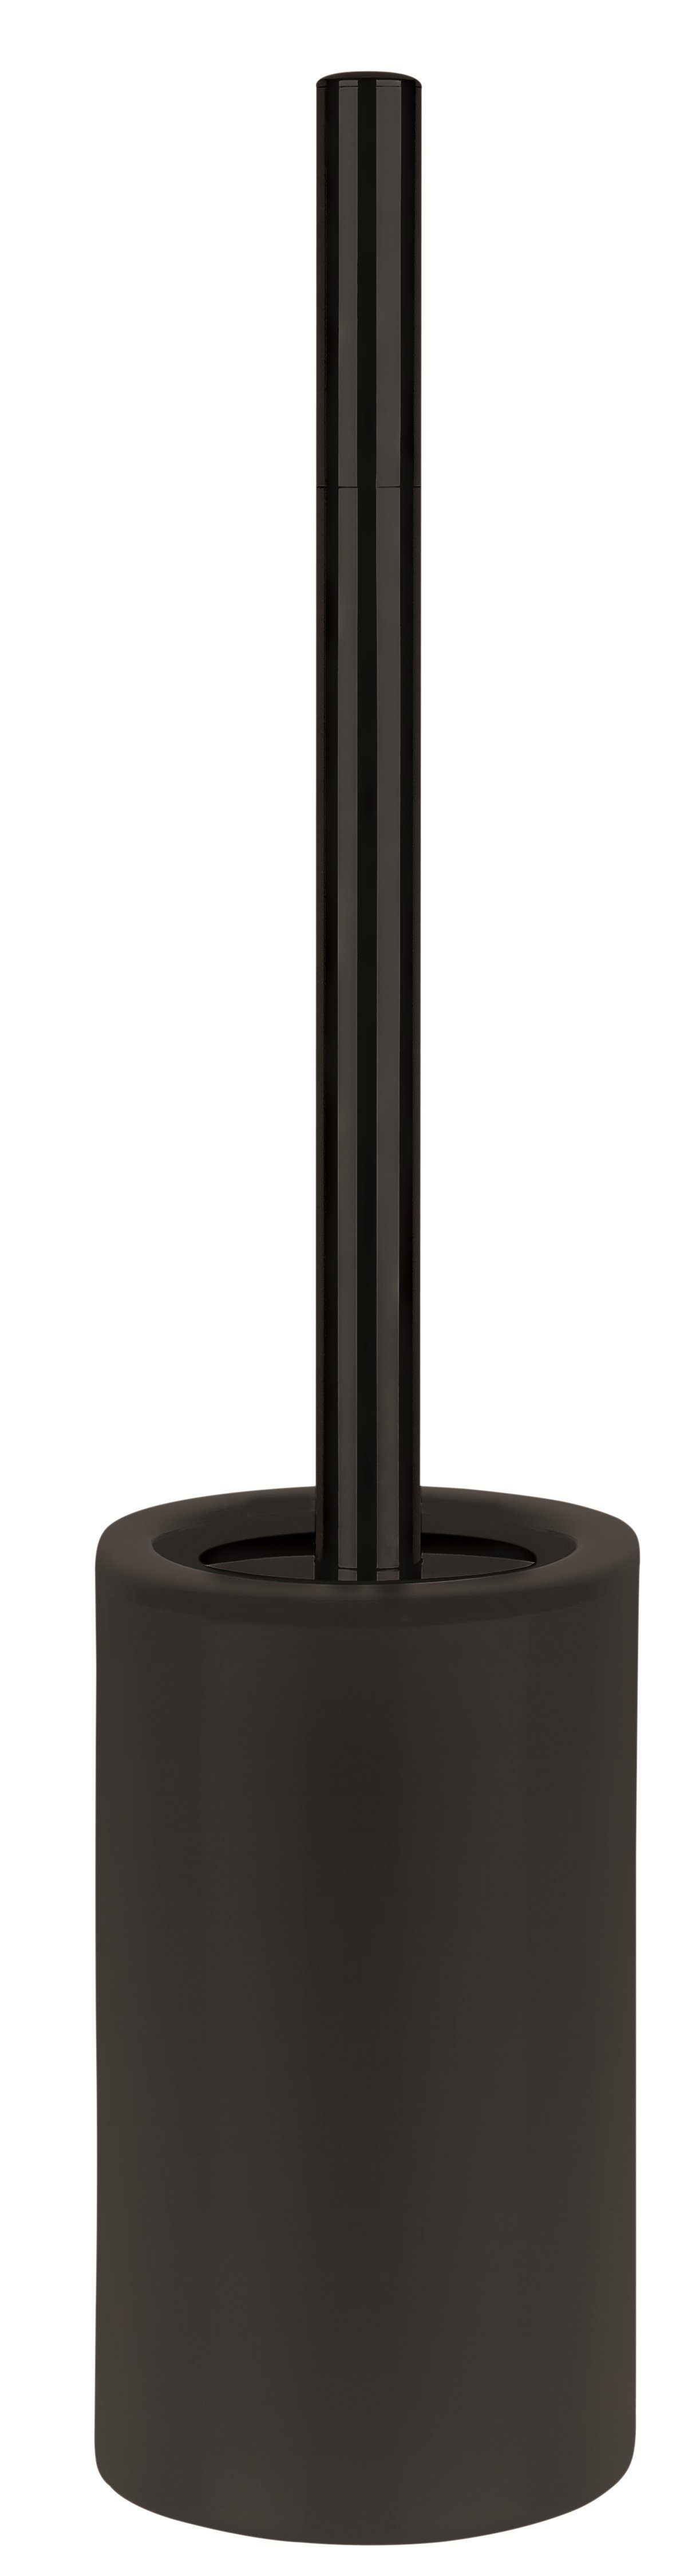 spirella Toilettenpapierhalter WC-Bürste TUBE-MATT, Keramik, Toilettenbürste Bad-Accessoires der Matt-Optik, aus elegante Passend schwarz, anderen hochwertiger zu TUBE-MATT Serie